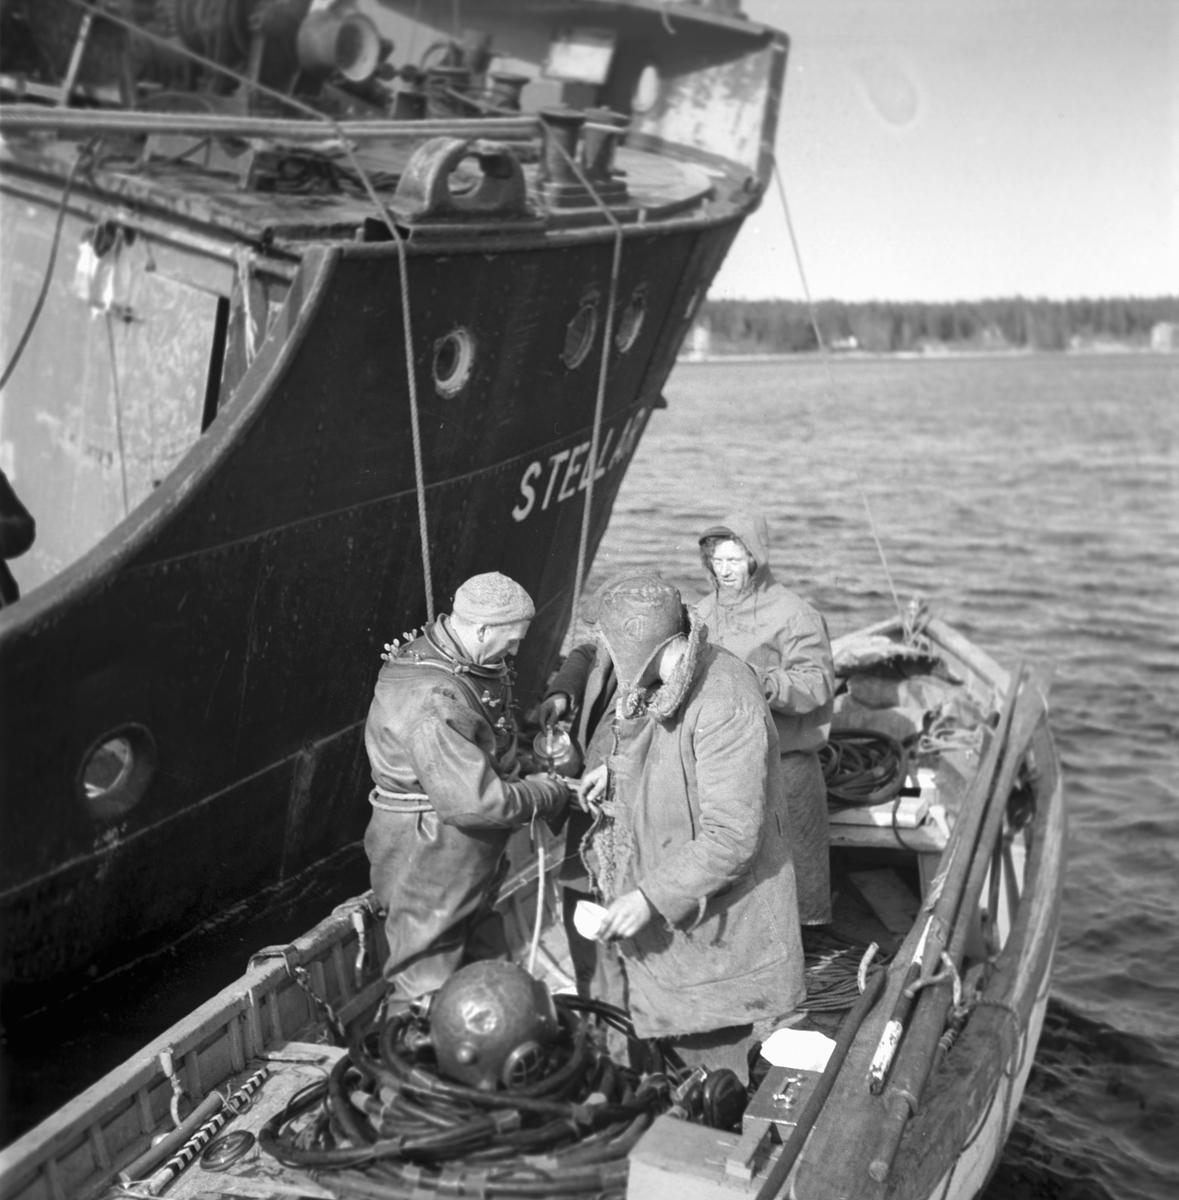 "Stellar" fartyget som gått på grund, på väg till Gävle hamn. April 1949.